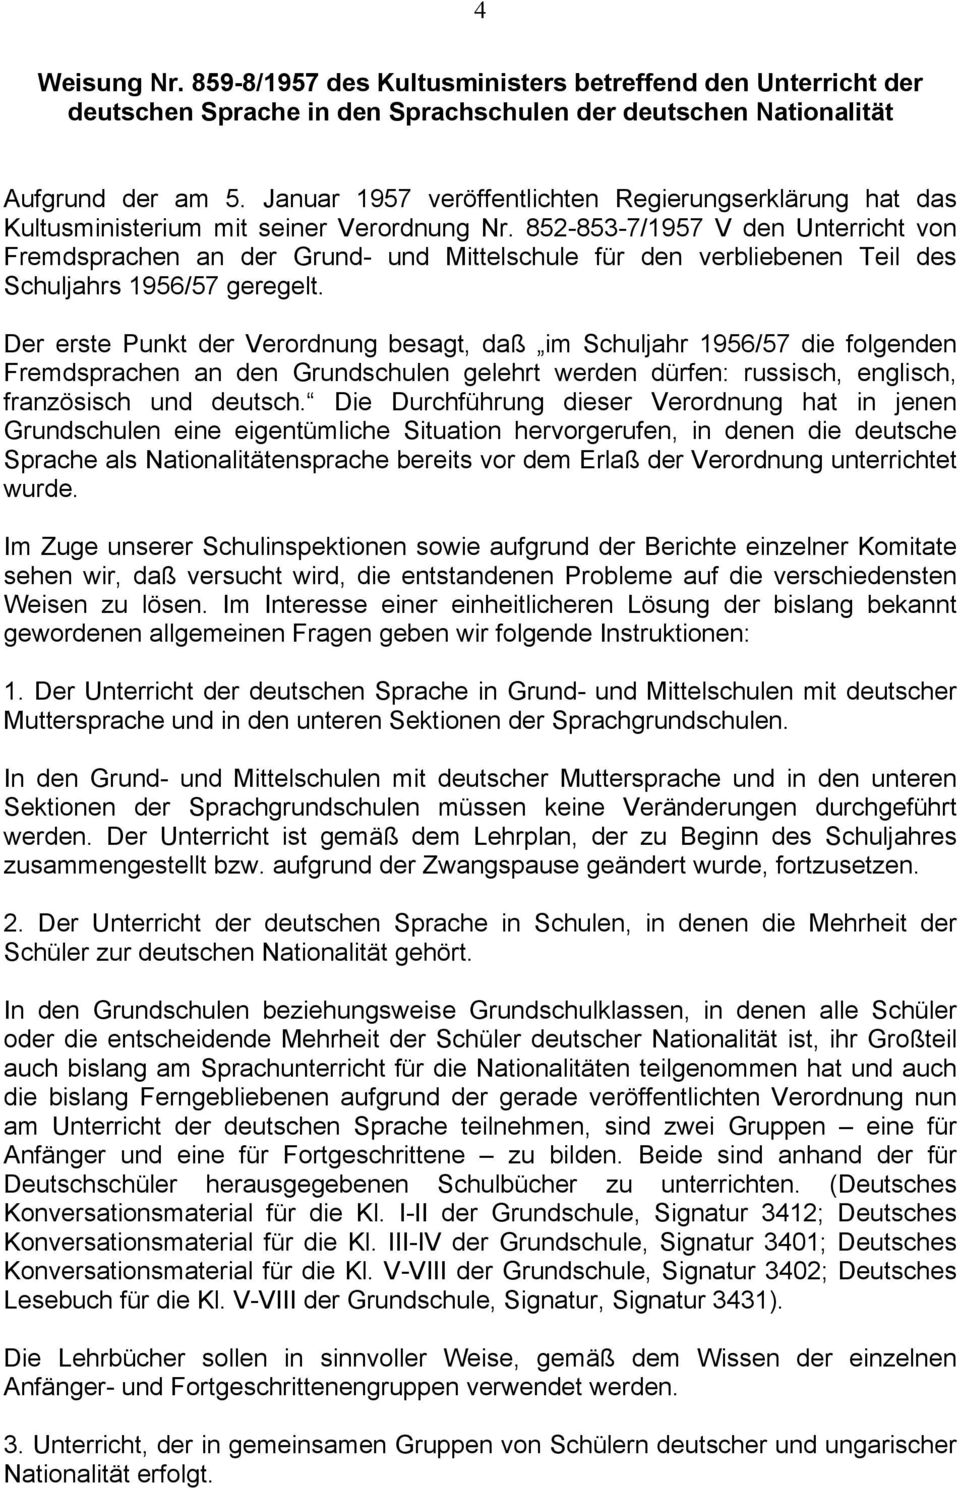 852-853-7/1957 V den Unterricht von Fremdsprachen an der Grund- und Mittelschule für den verbliebenen Teil des Schuljahrs 1956/57 geregelt.